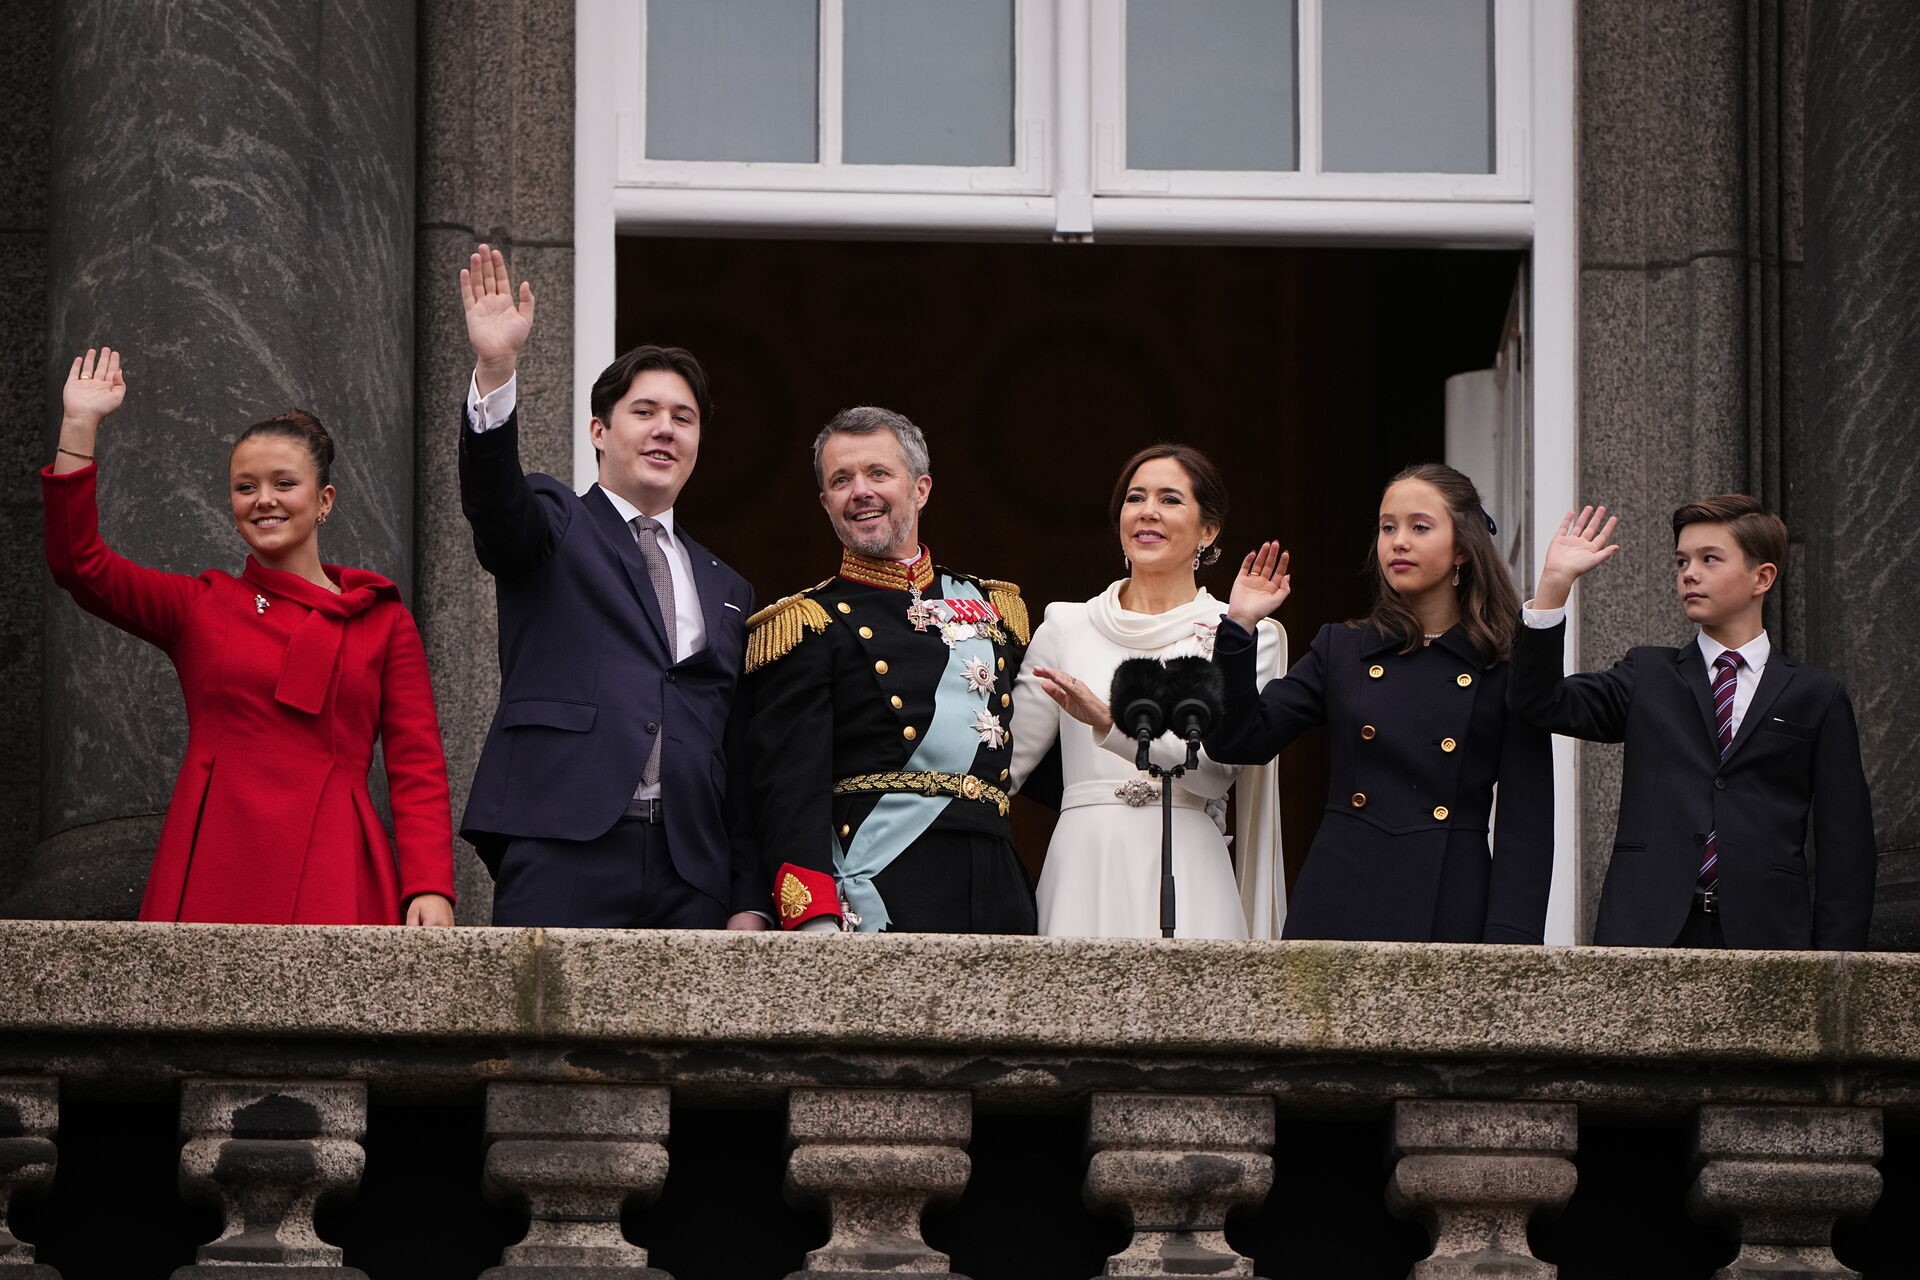 La famiglia reale al completo sul balcone del palazzo di Christiansborg. Da sinistra, la principessa Isabella, il principe ereditario Cristiano, re Federico X, la regina Mary, i principi Josephine e Vincent.